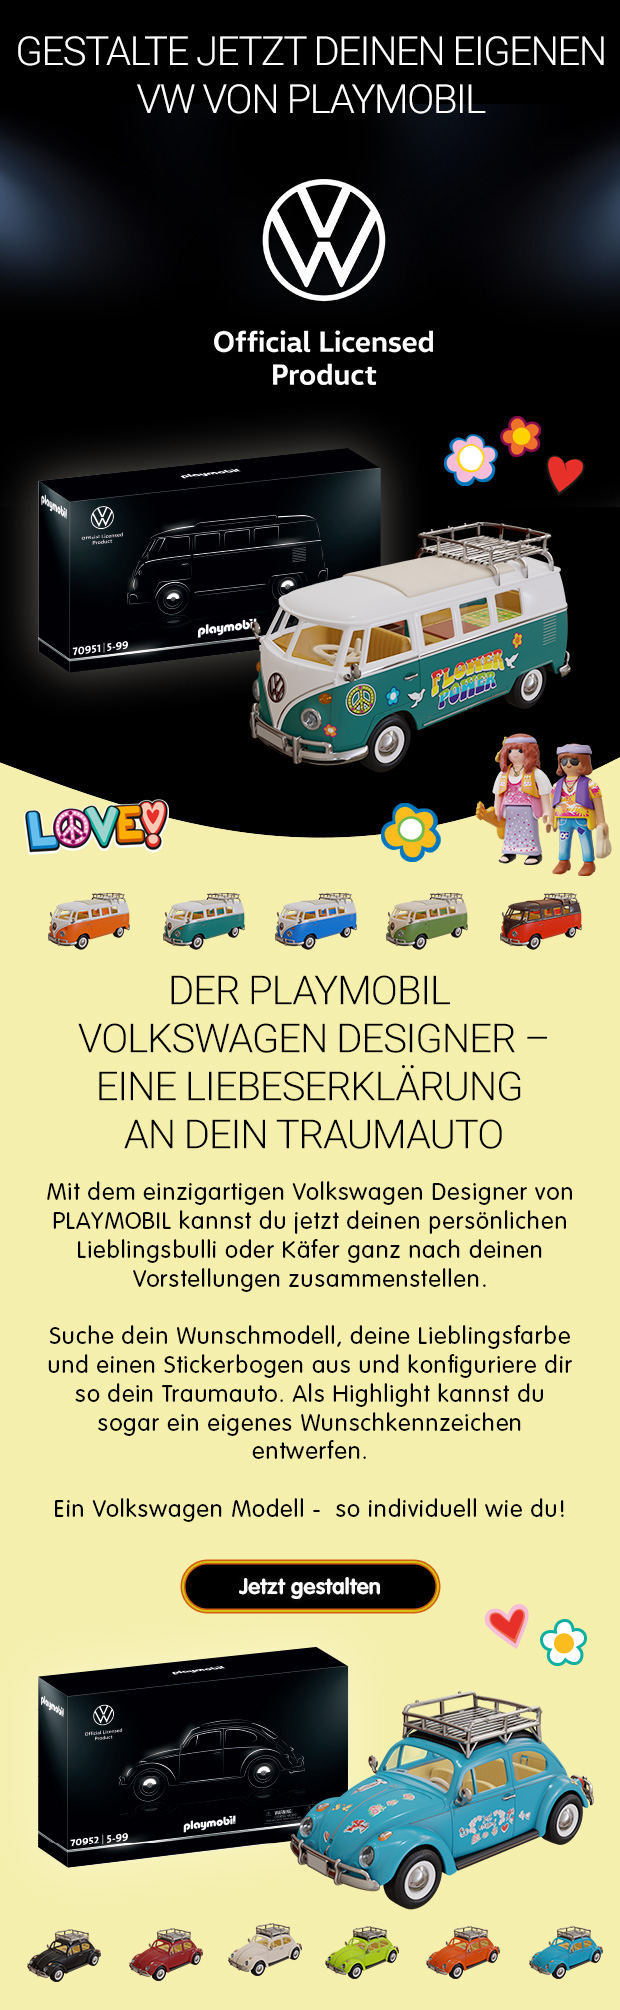 PLAYMOBIL VW